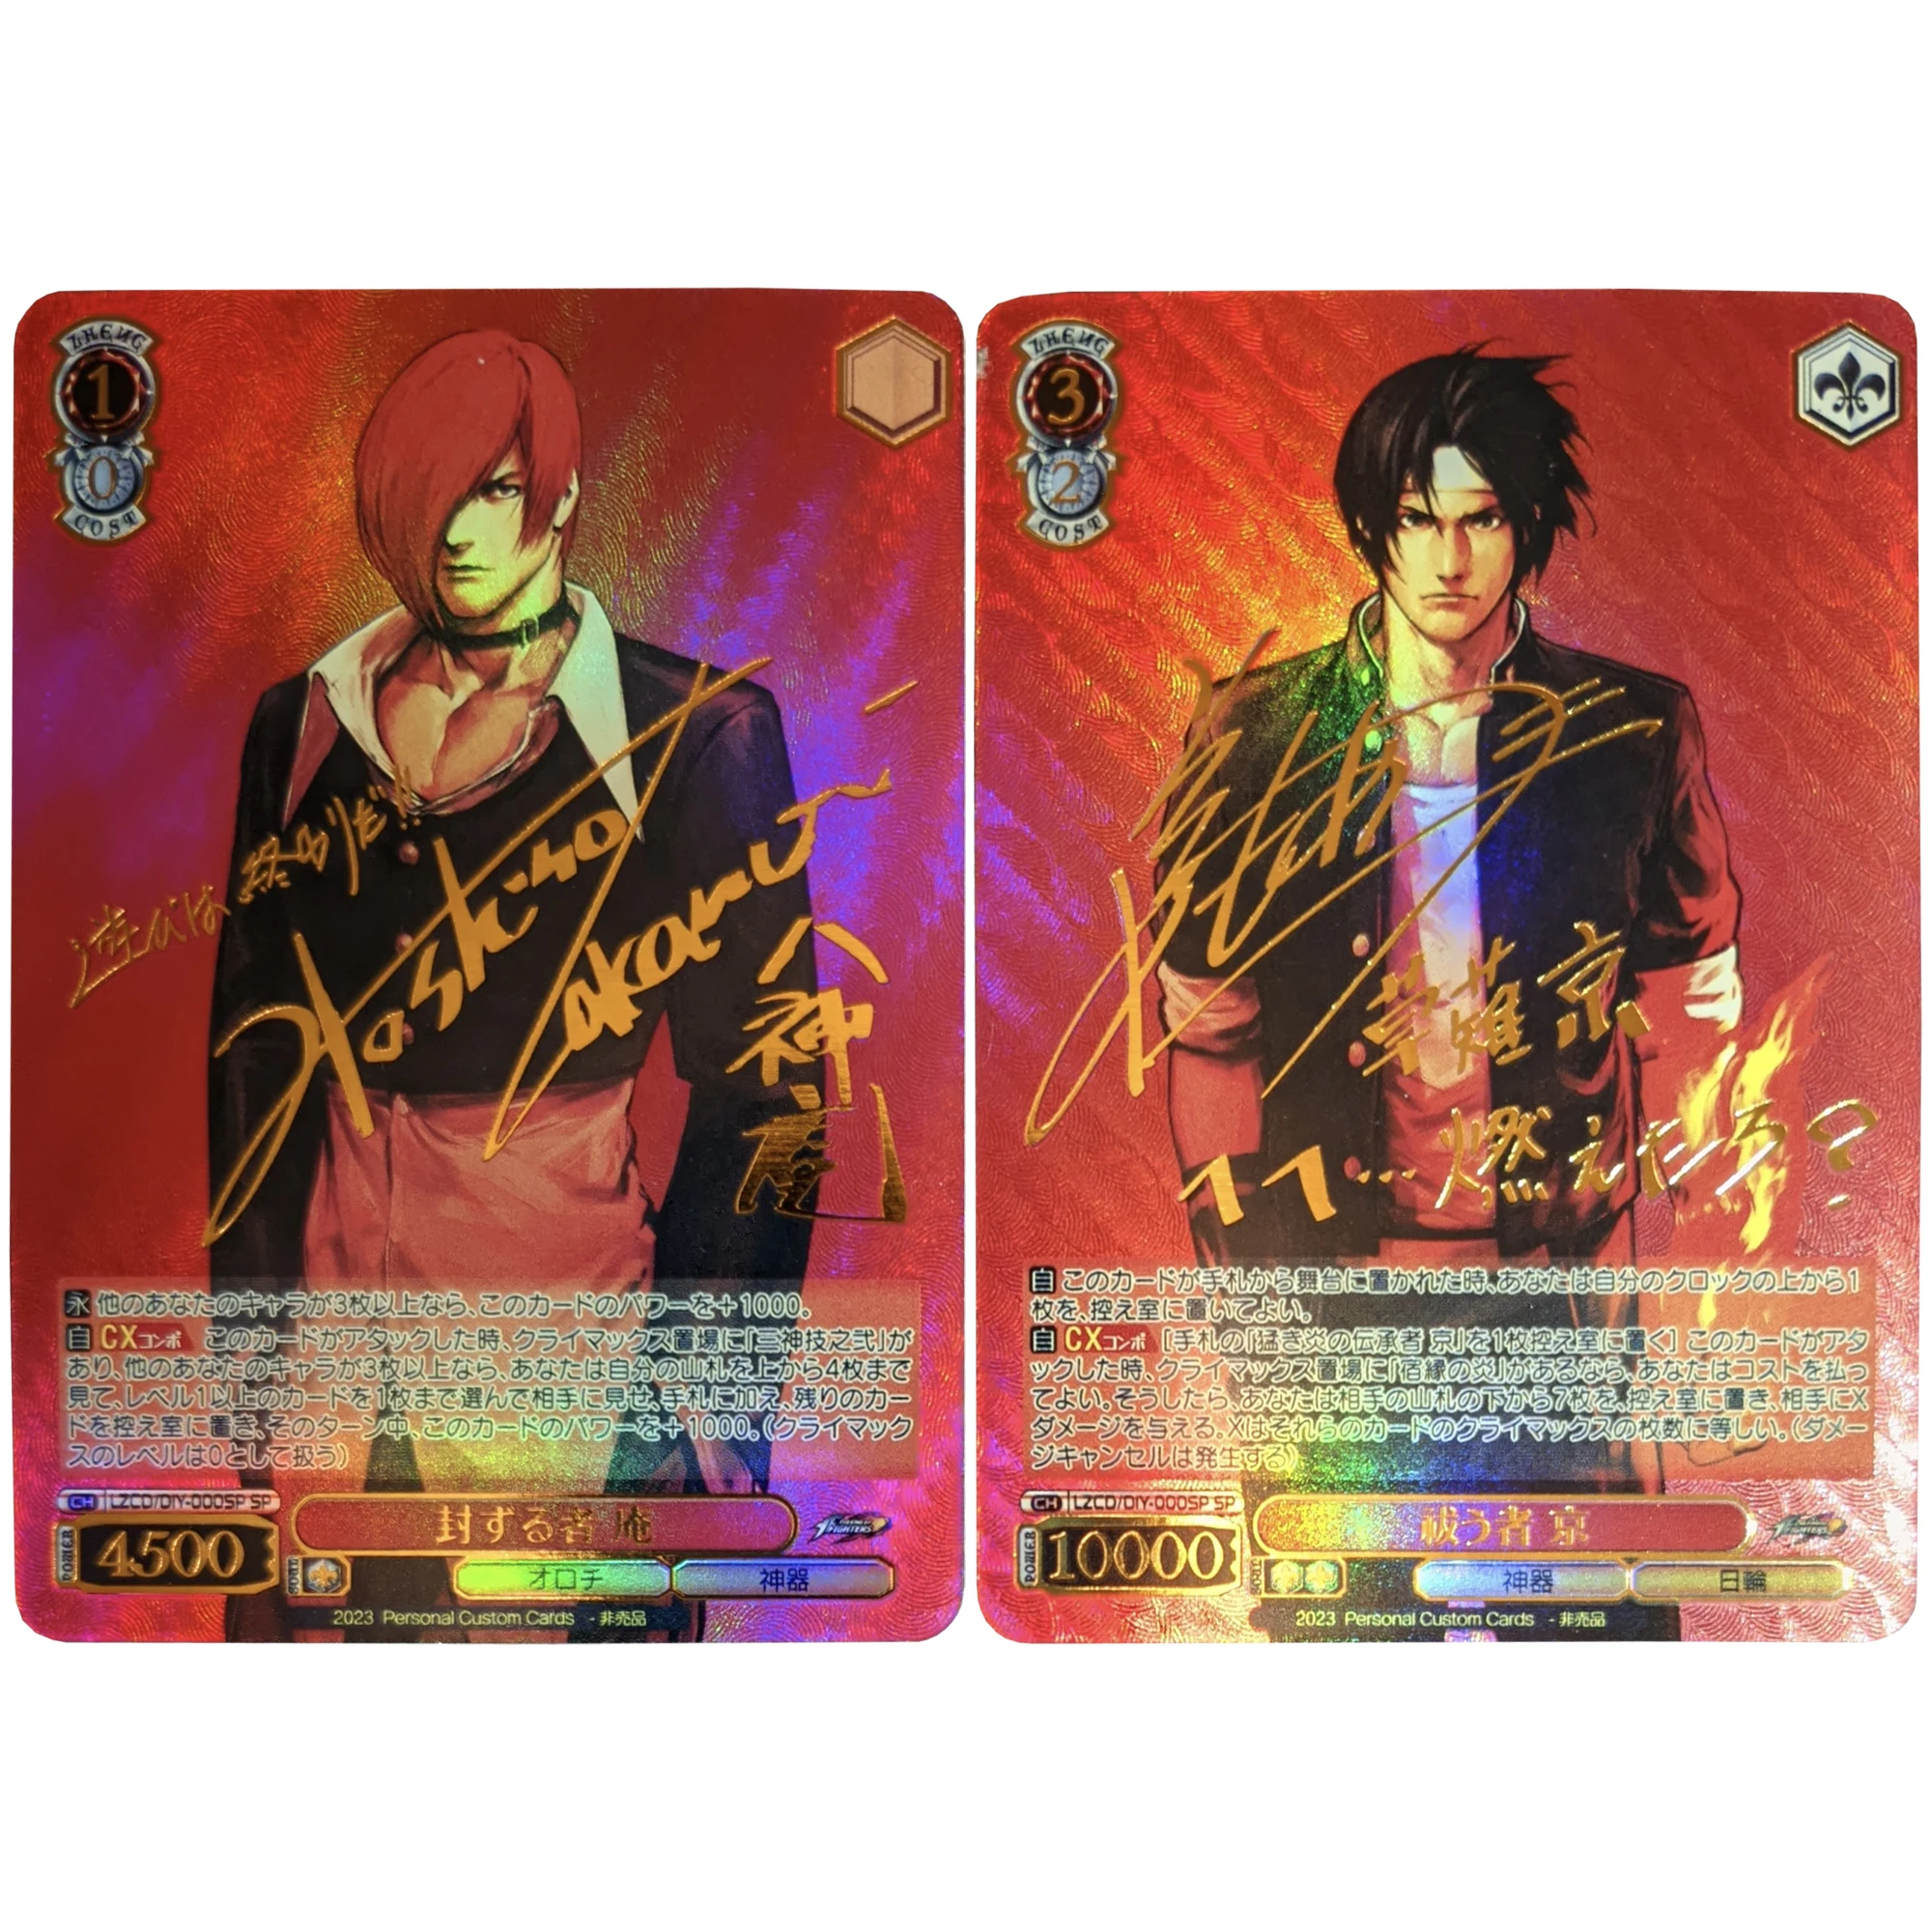 2 Adet/takım Savaşçıların kralı Kyo Kusanagi Iori Yagami Sıcak Damgalama İmza Flash Kart Oyunu Anime Koleksiyon Kartları Dıy Hediye Oyuncaklar